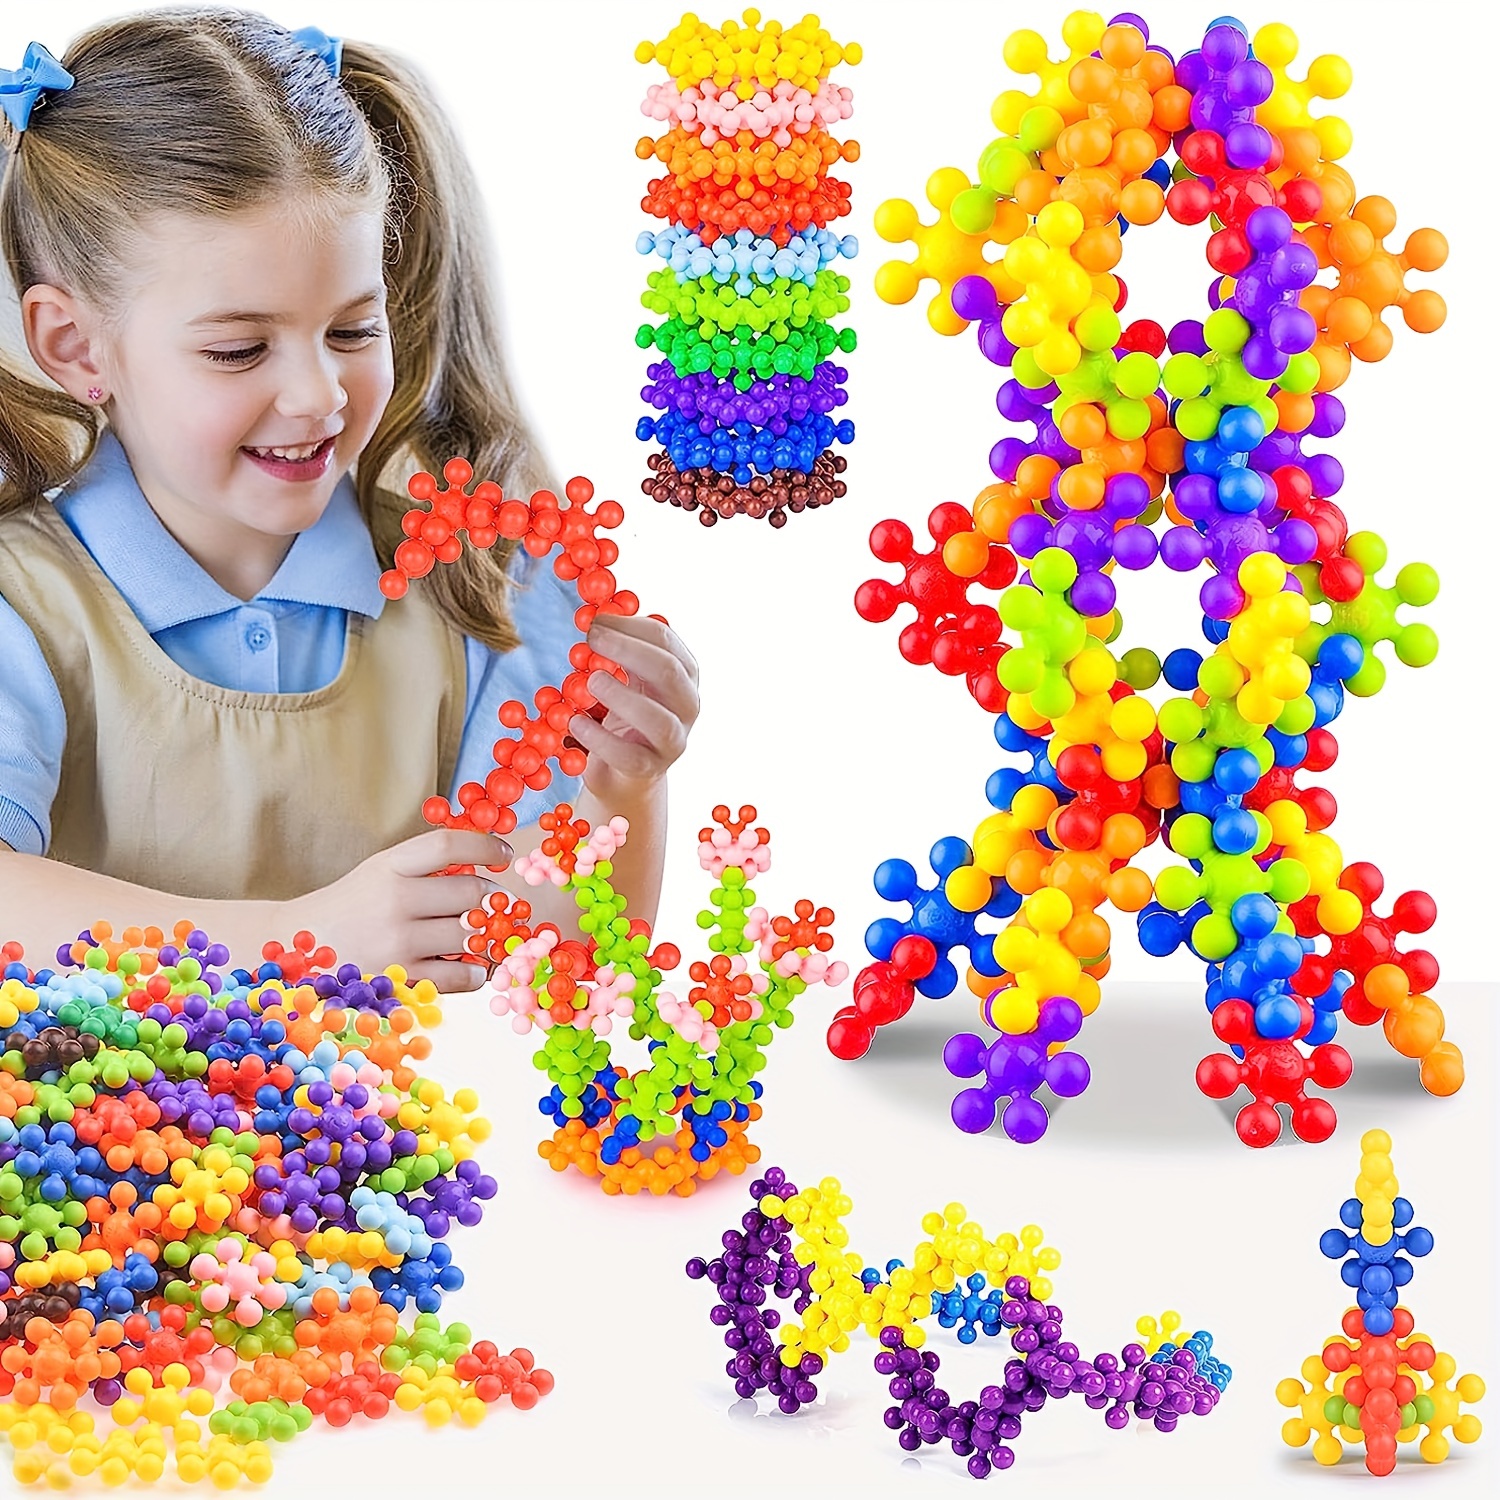 200 PCS Juguetes Bloques para Niños Premium - Caja de Almacenamiento -  Bloques de Construcción - Juegos Didácticos Niños 3 Años - Juguetes  Montessori - Blocks para Niños - Stem Toys - Colores Pastel